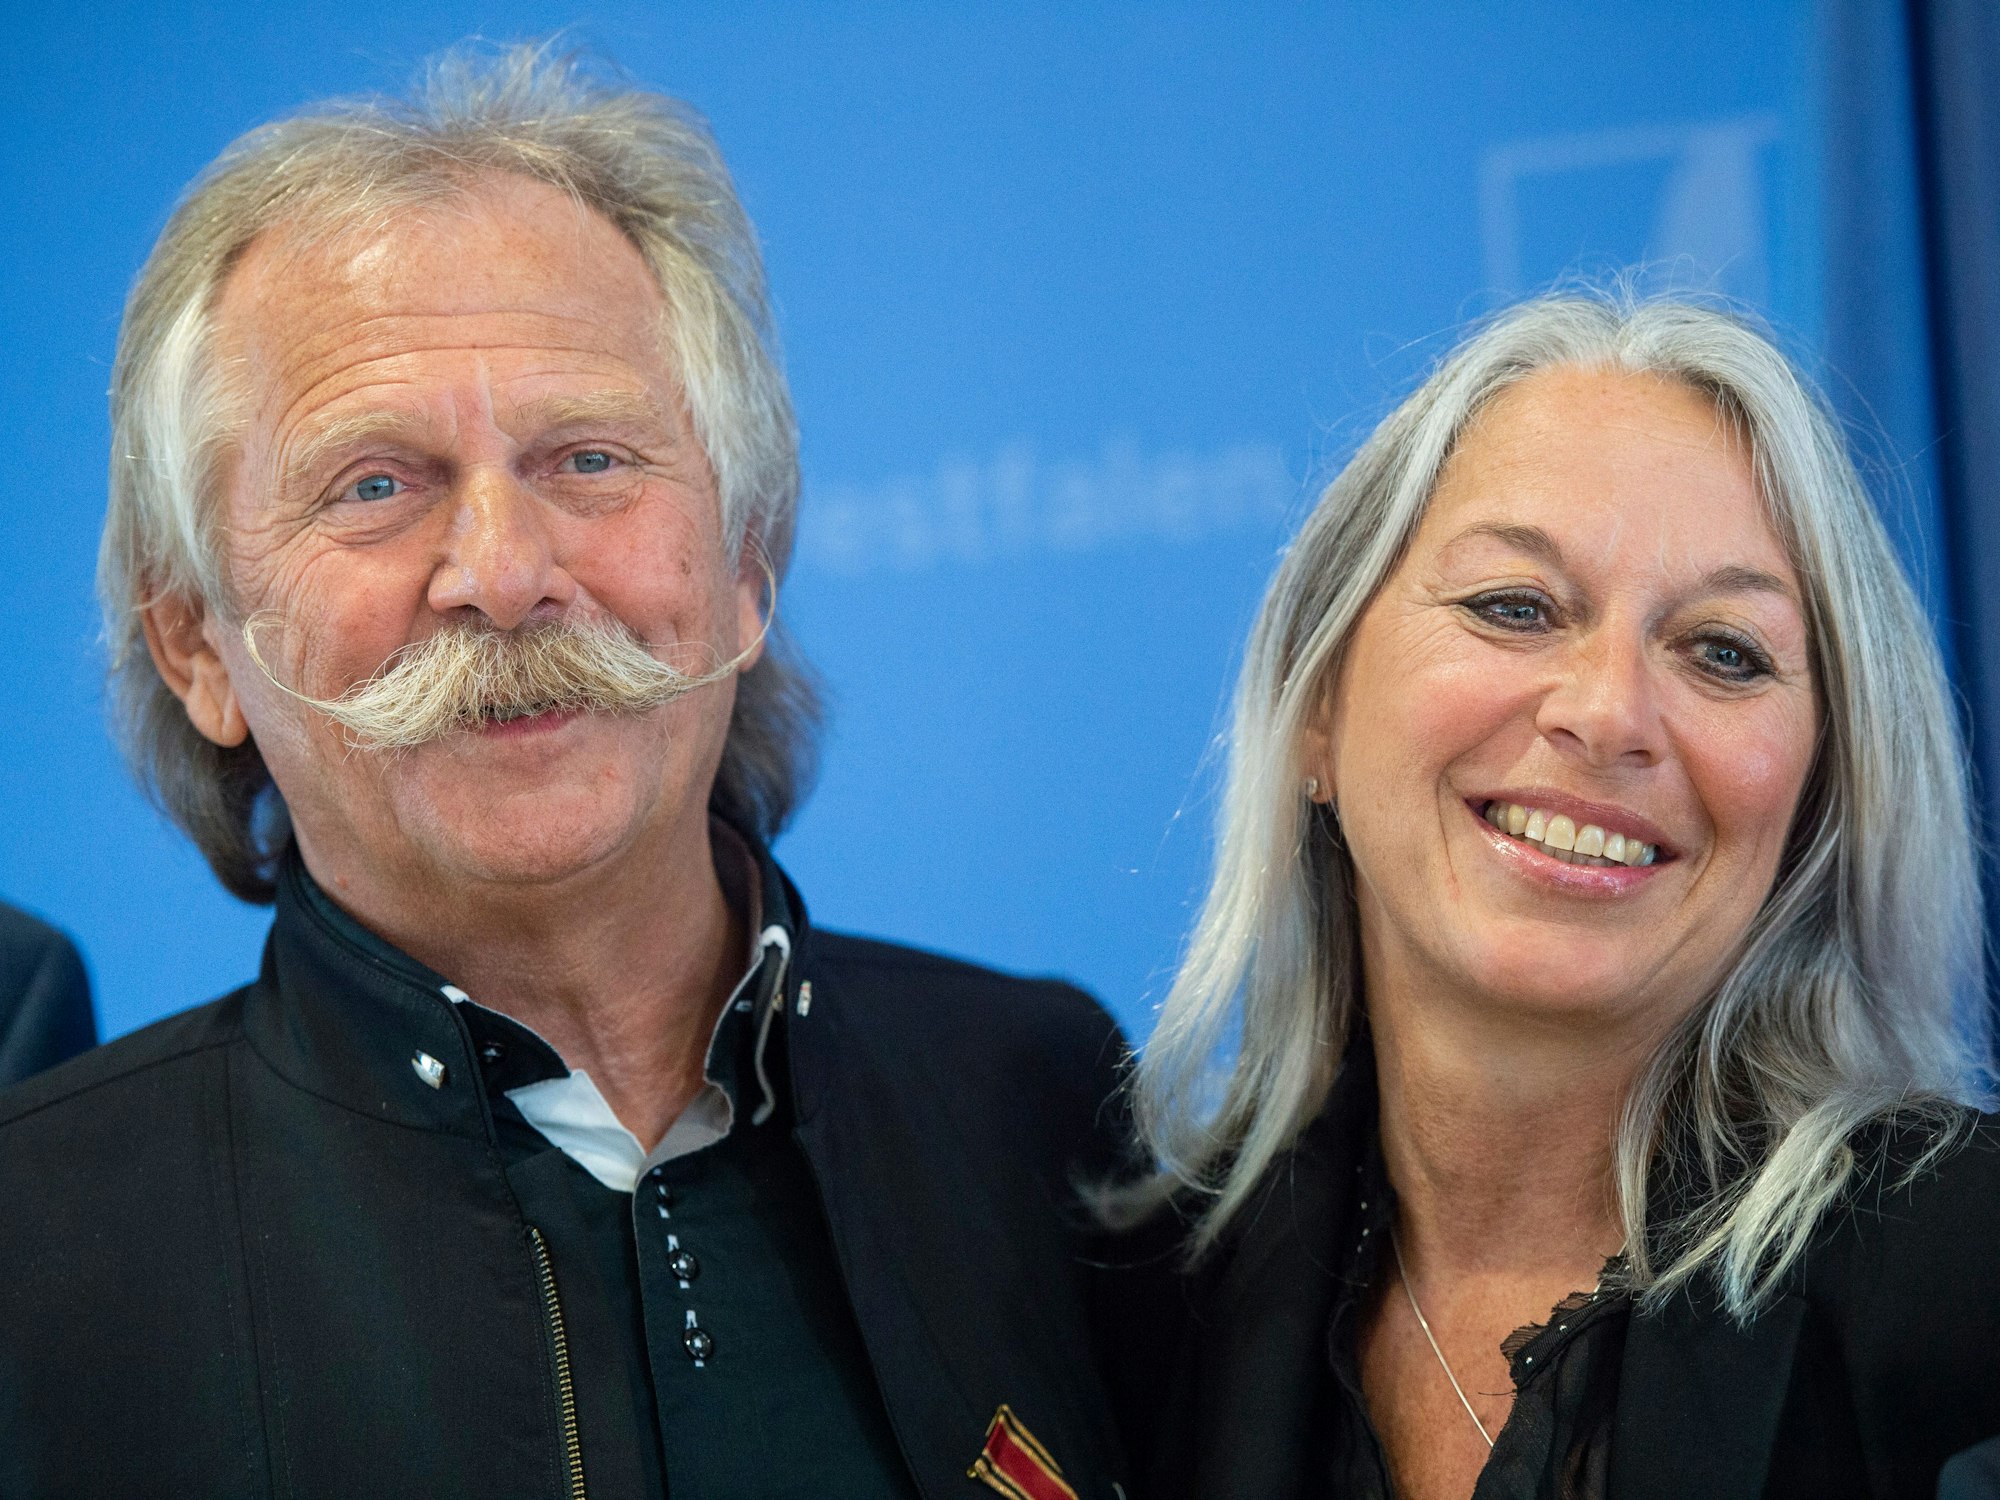 Henning Krautmacher, Sänger der Band Höhner, gemeinsam mit seiner Frau Anke Krautmacher auf einem Event in Düsseldorf.